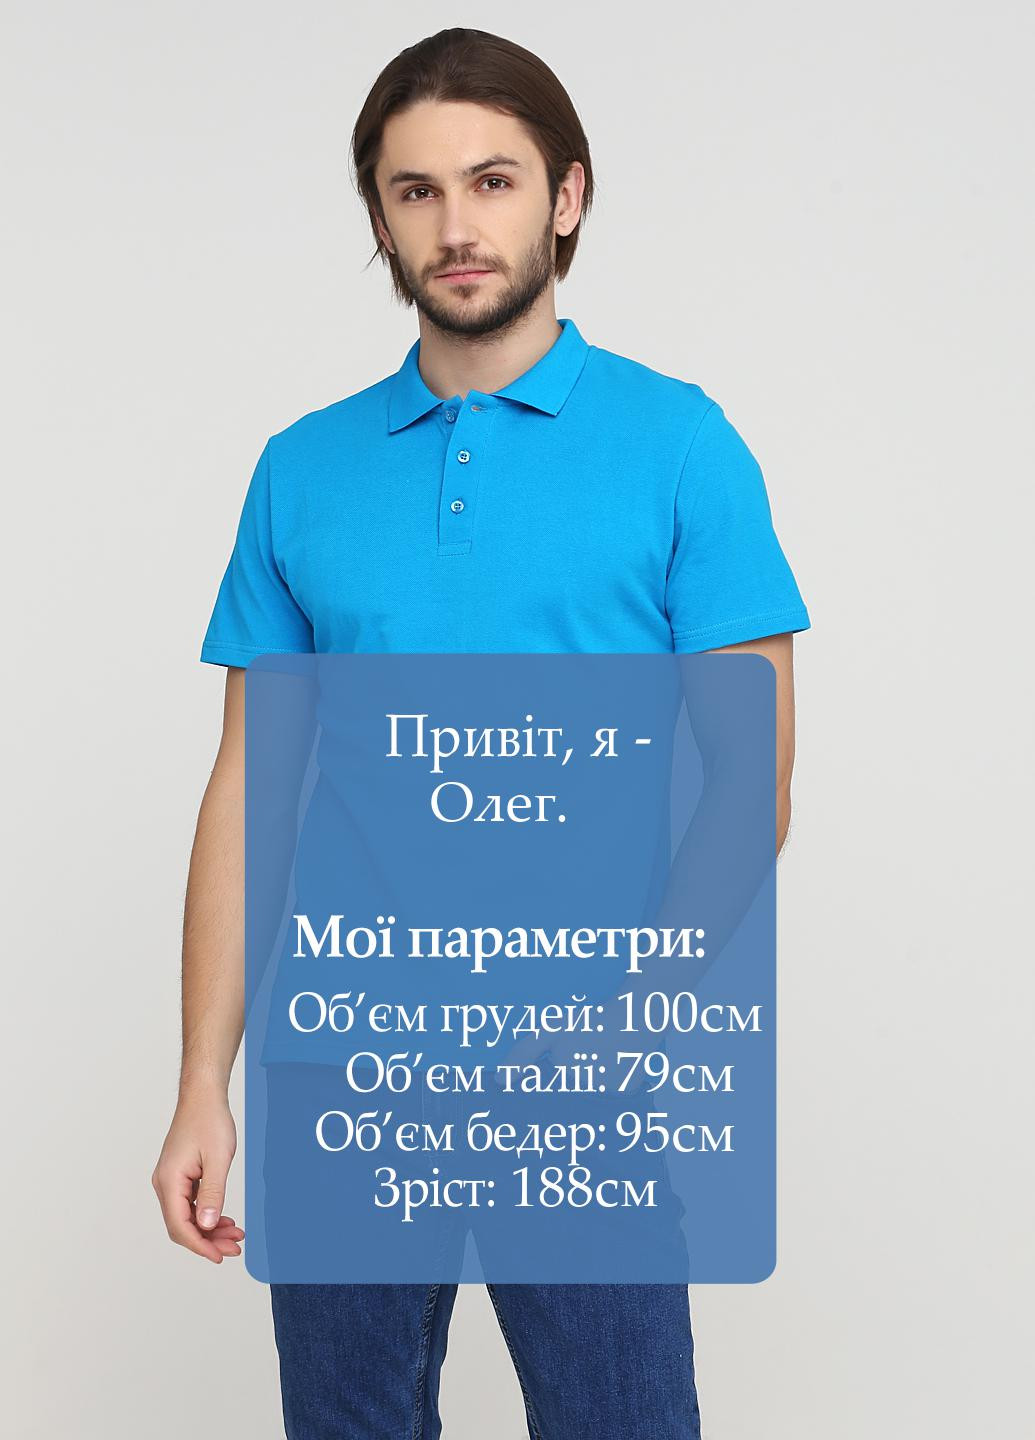 Бирюзовая футболка-чоловіча футболка поло 100% бавовна синьо-бірюзова для мужчин Melgo однотонная